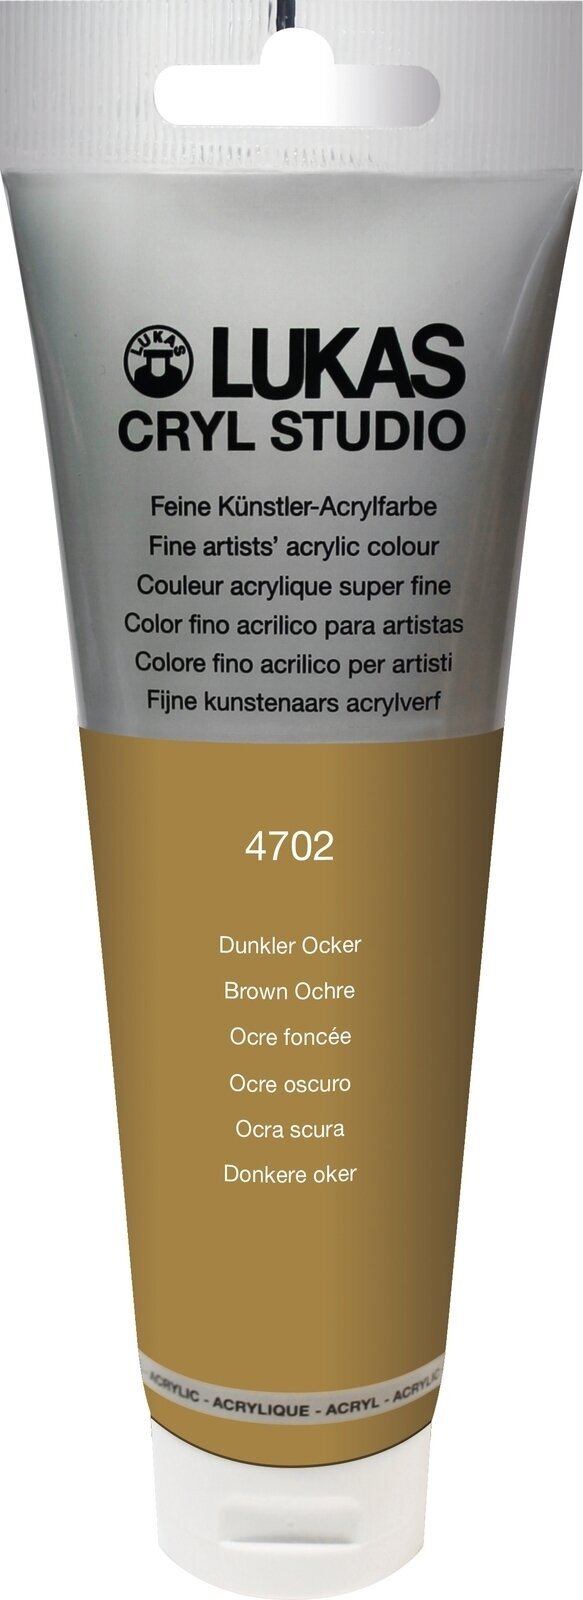 Akrylová farba Lukas Cryl Studio Acrylic Paint Plastic Tube Akrylová farba Brown Ochre 125 ml 1 ks